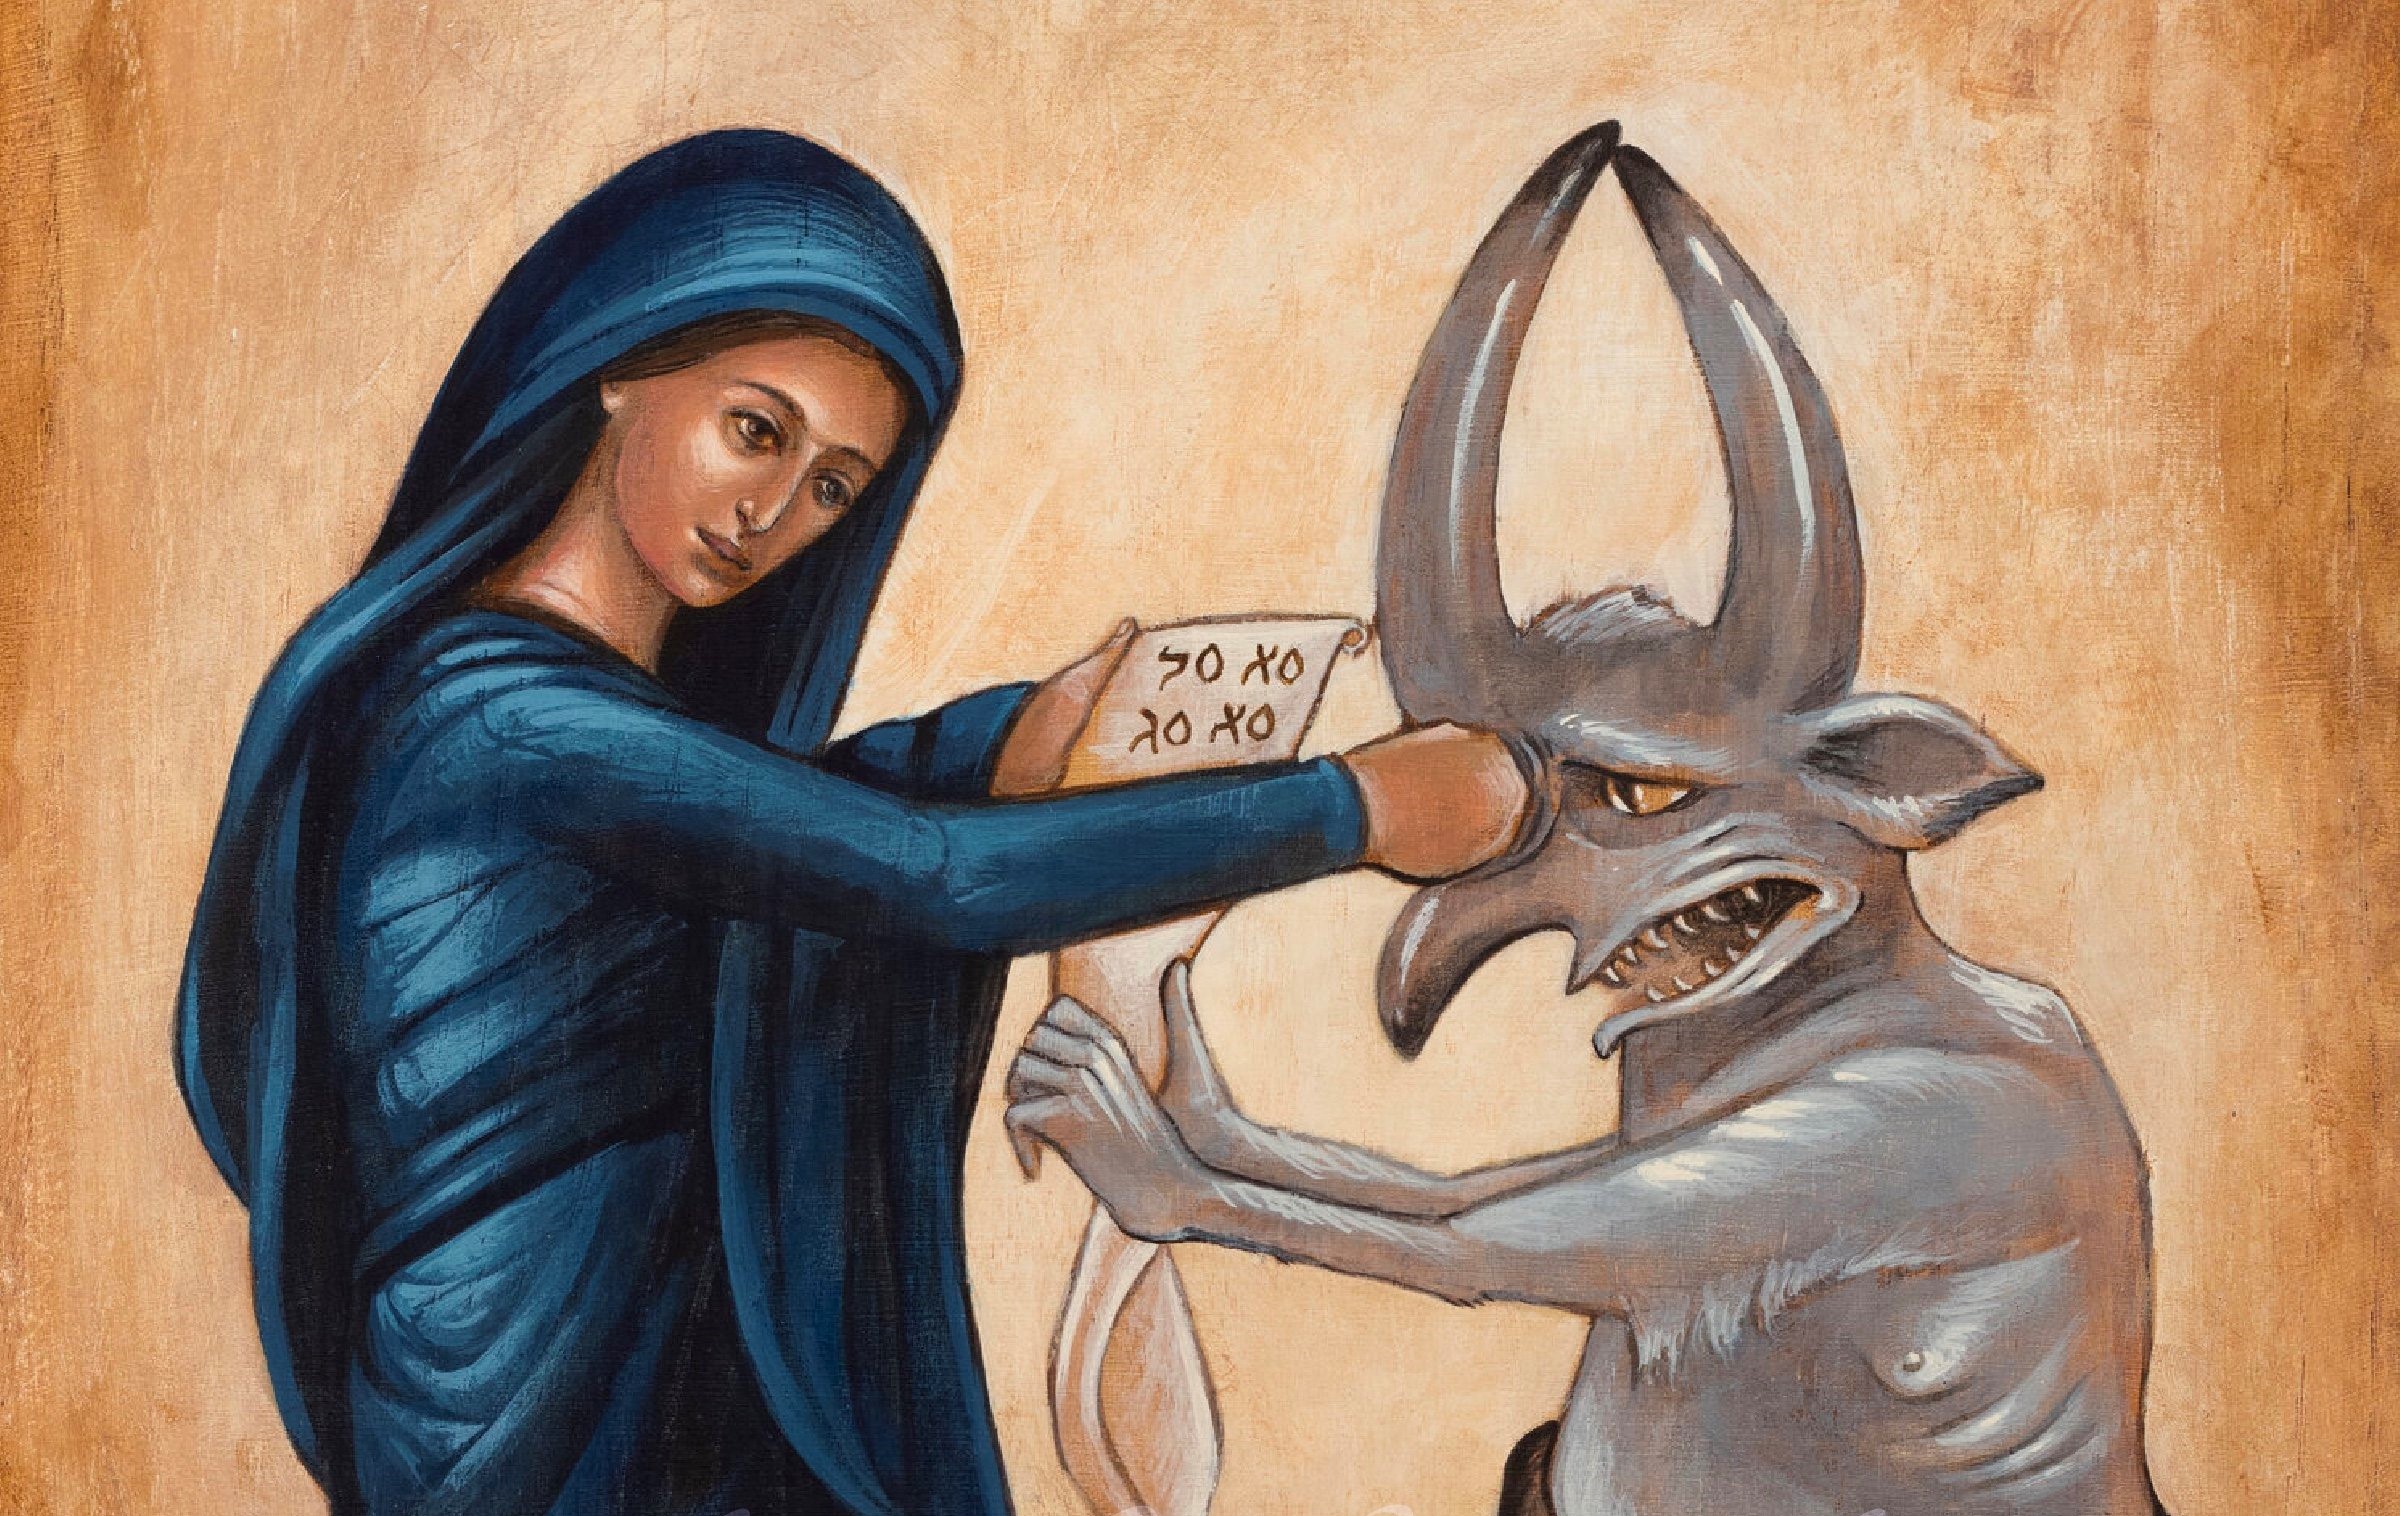 Secretos Oscuros: Belcebú y su Fascinación por la Virgen María